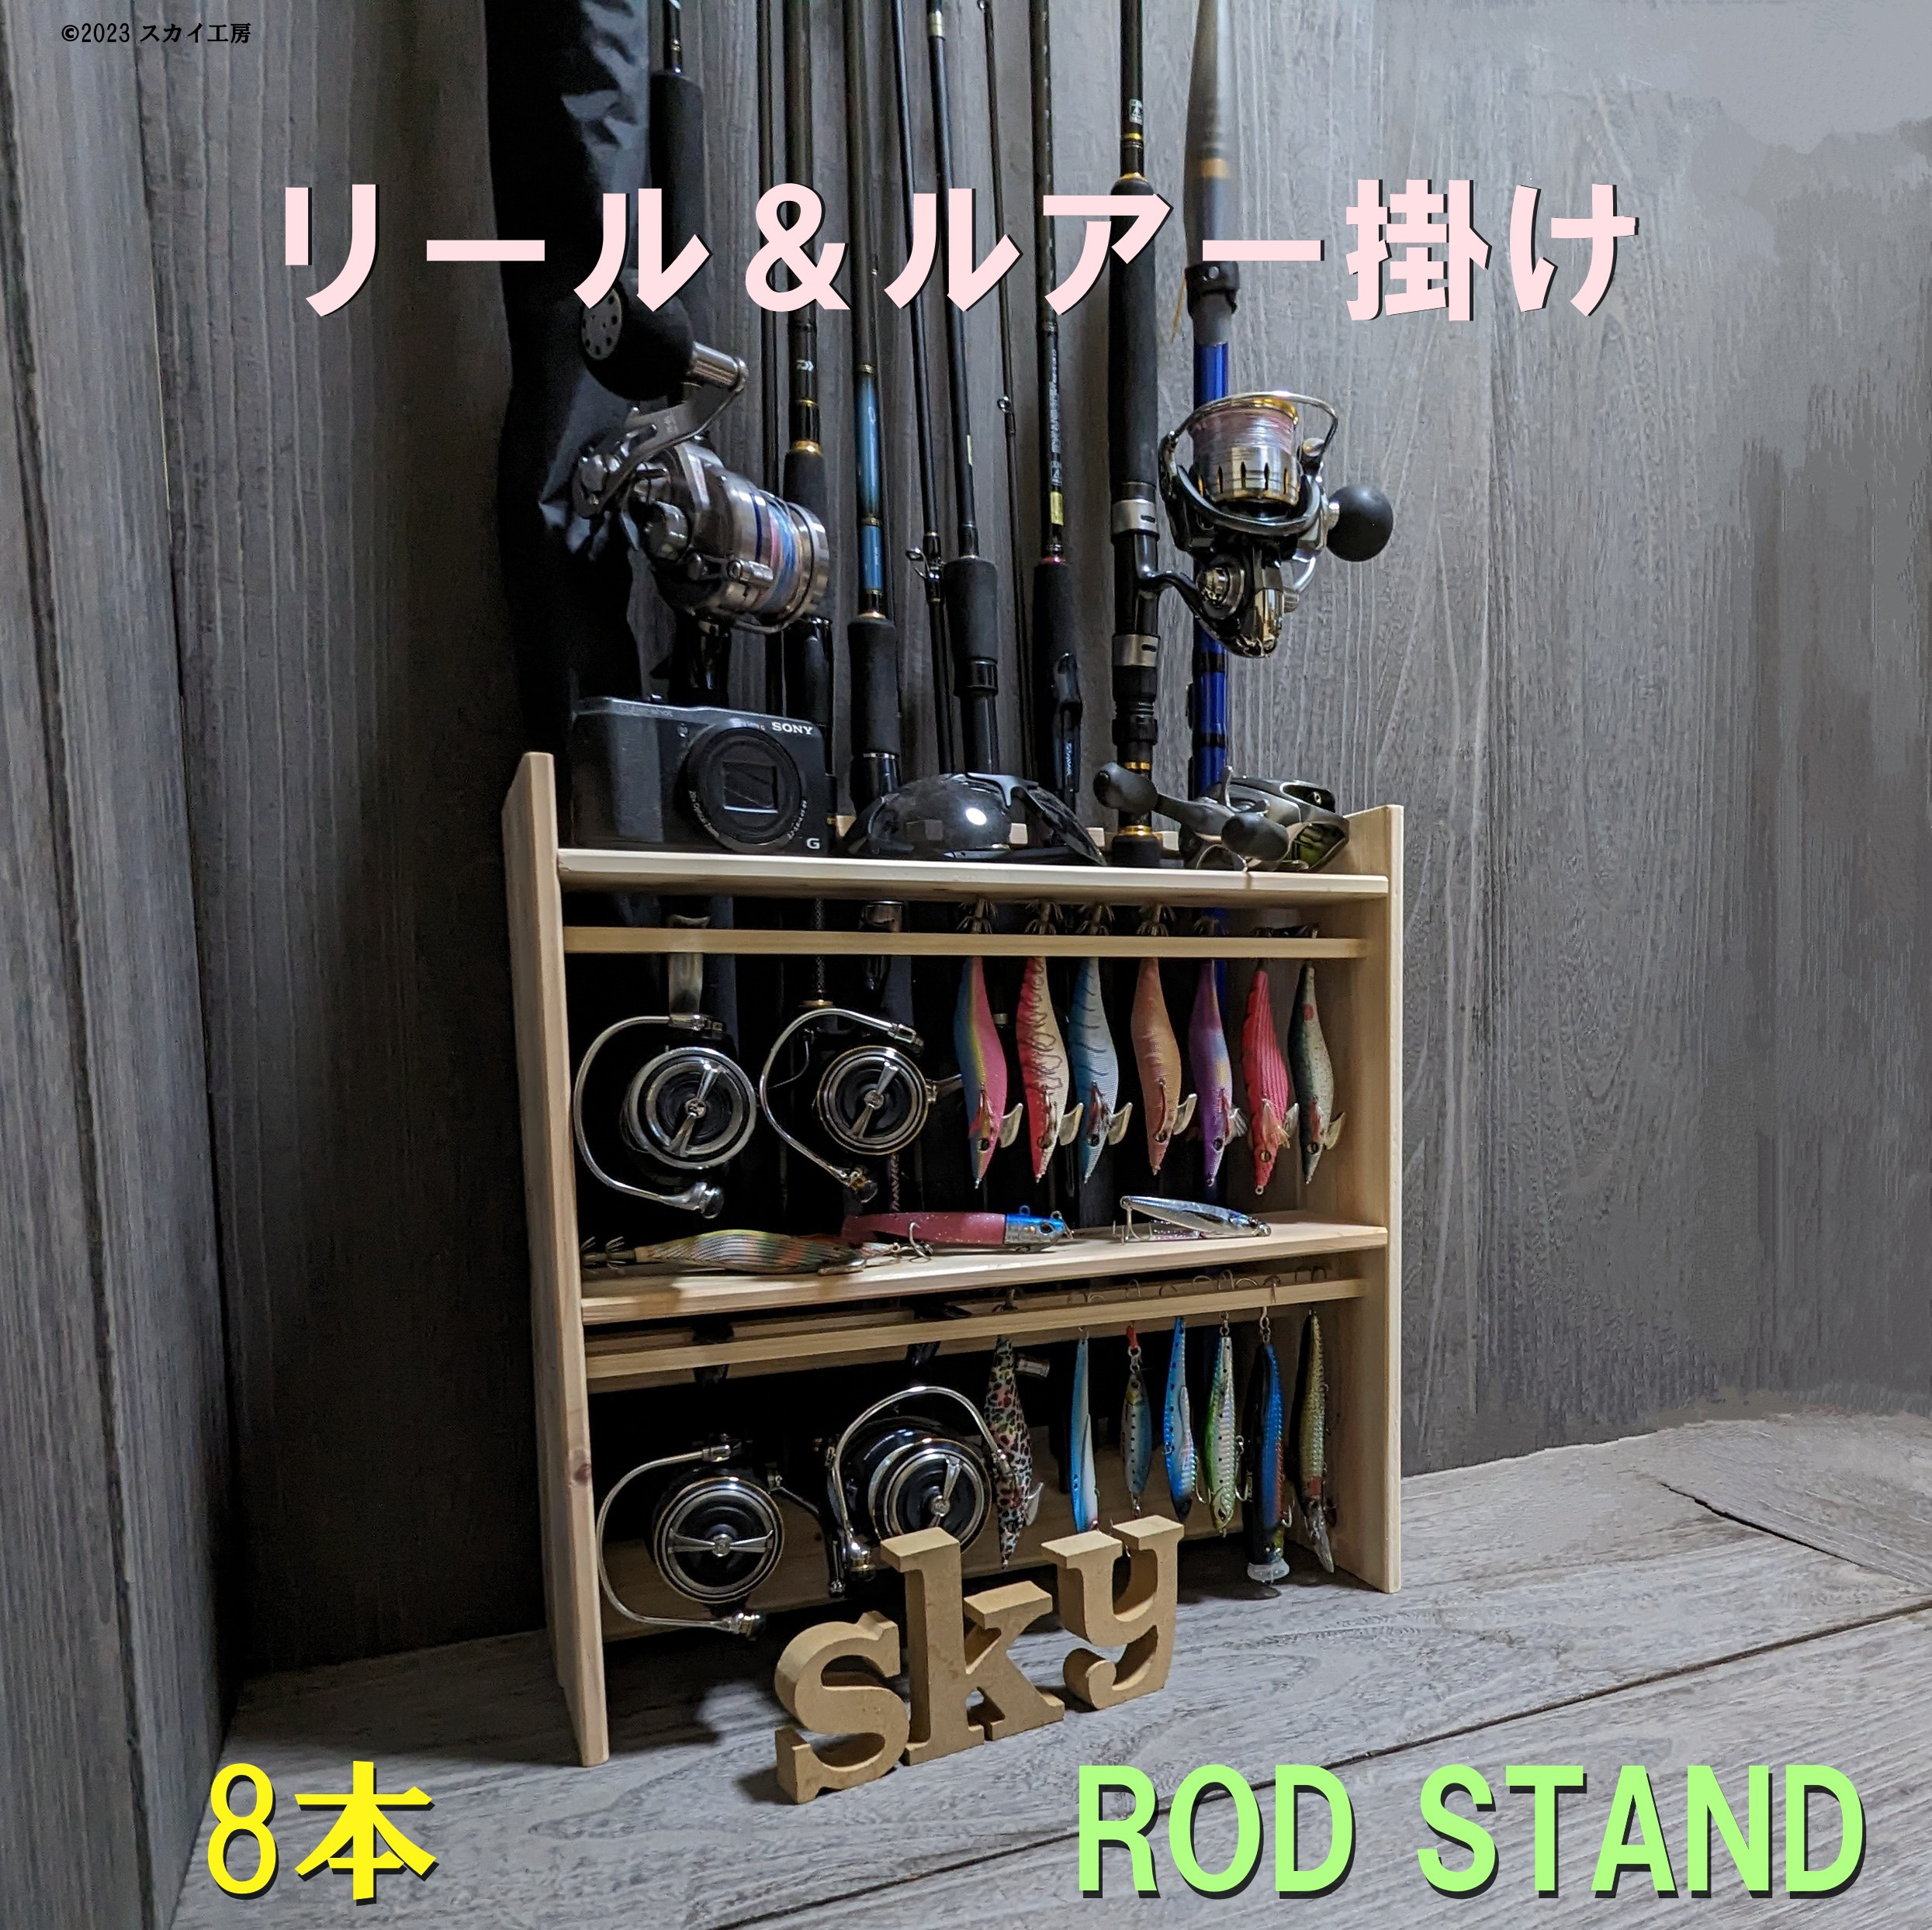 ロッドスタンド 8本 国産ヒノキ製 リール&ルアースタンド一体式ロッド